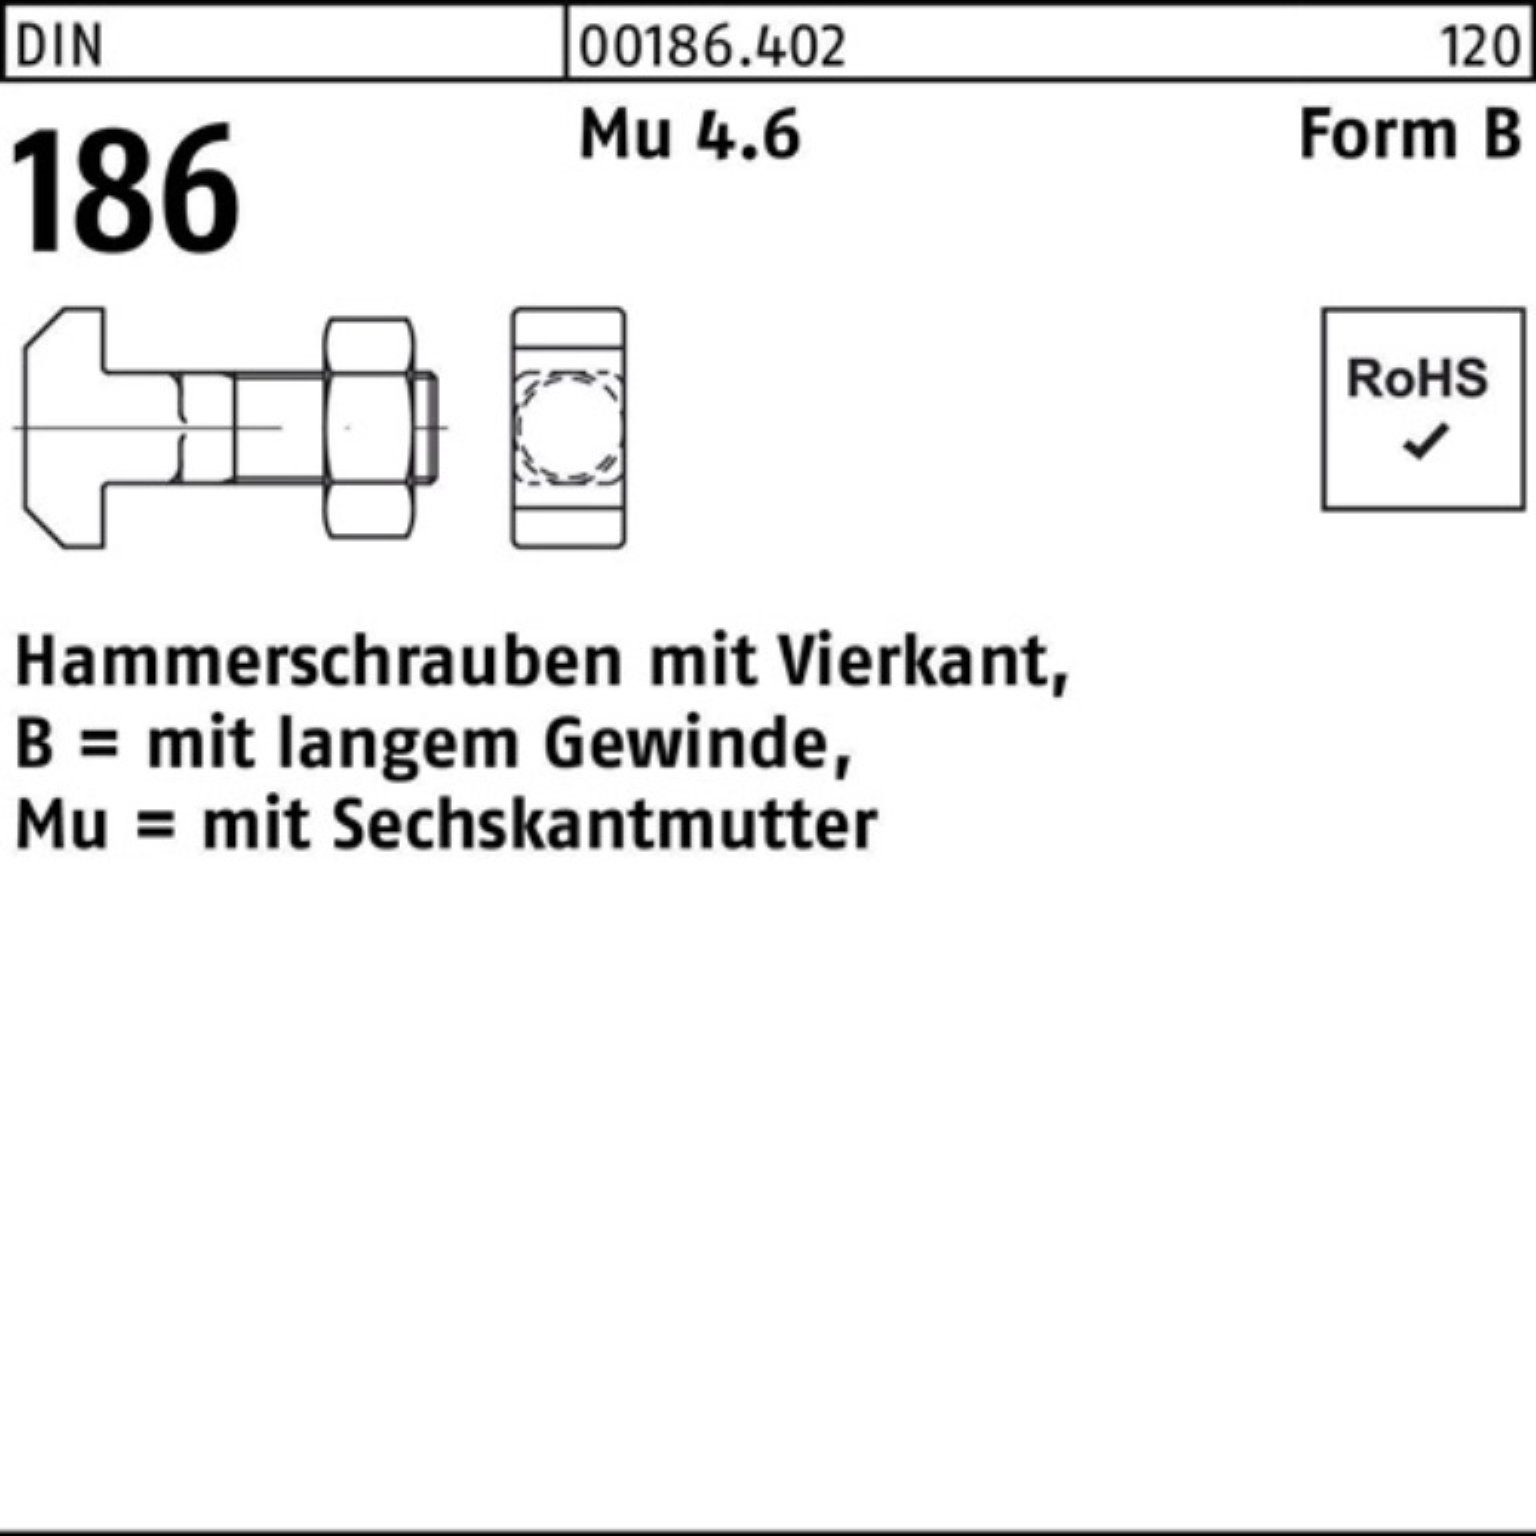 Pack DIN Vierkant 186 120 FormB Reyher BM Hammerschraube 6-ktmutter Schraube 20x 100er